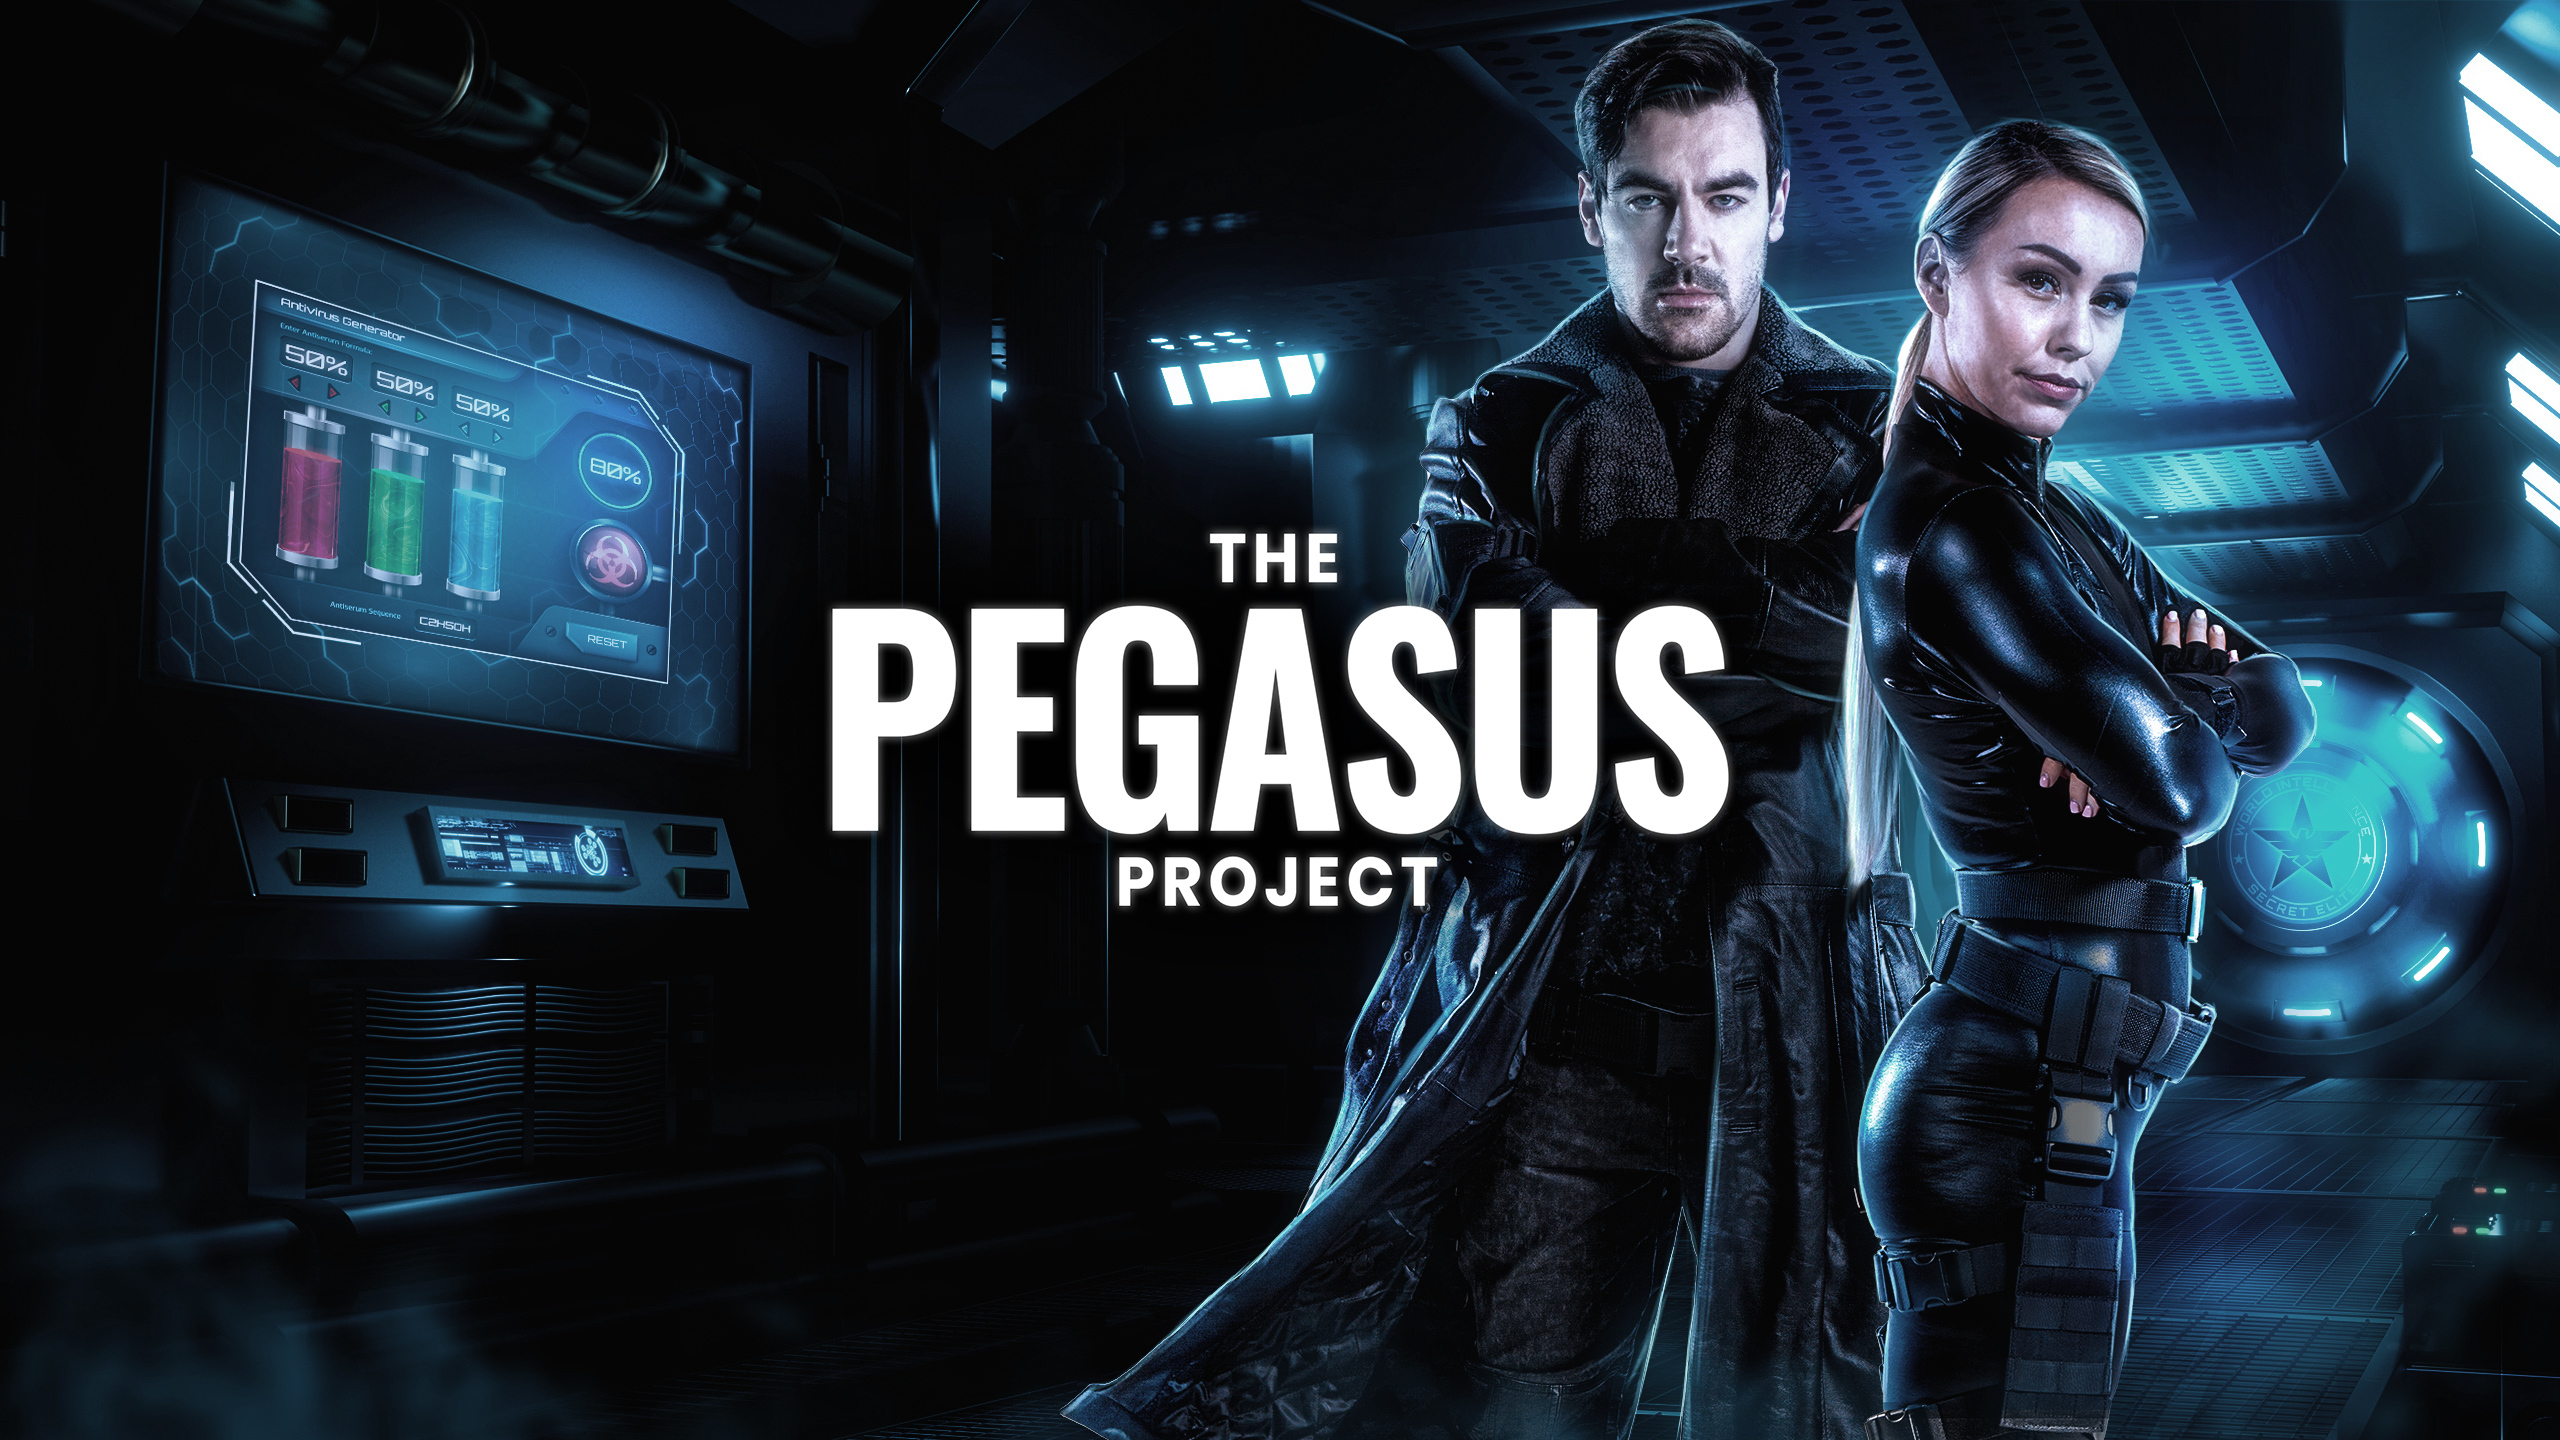 Scheveningen: Online escape game The Pegasus